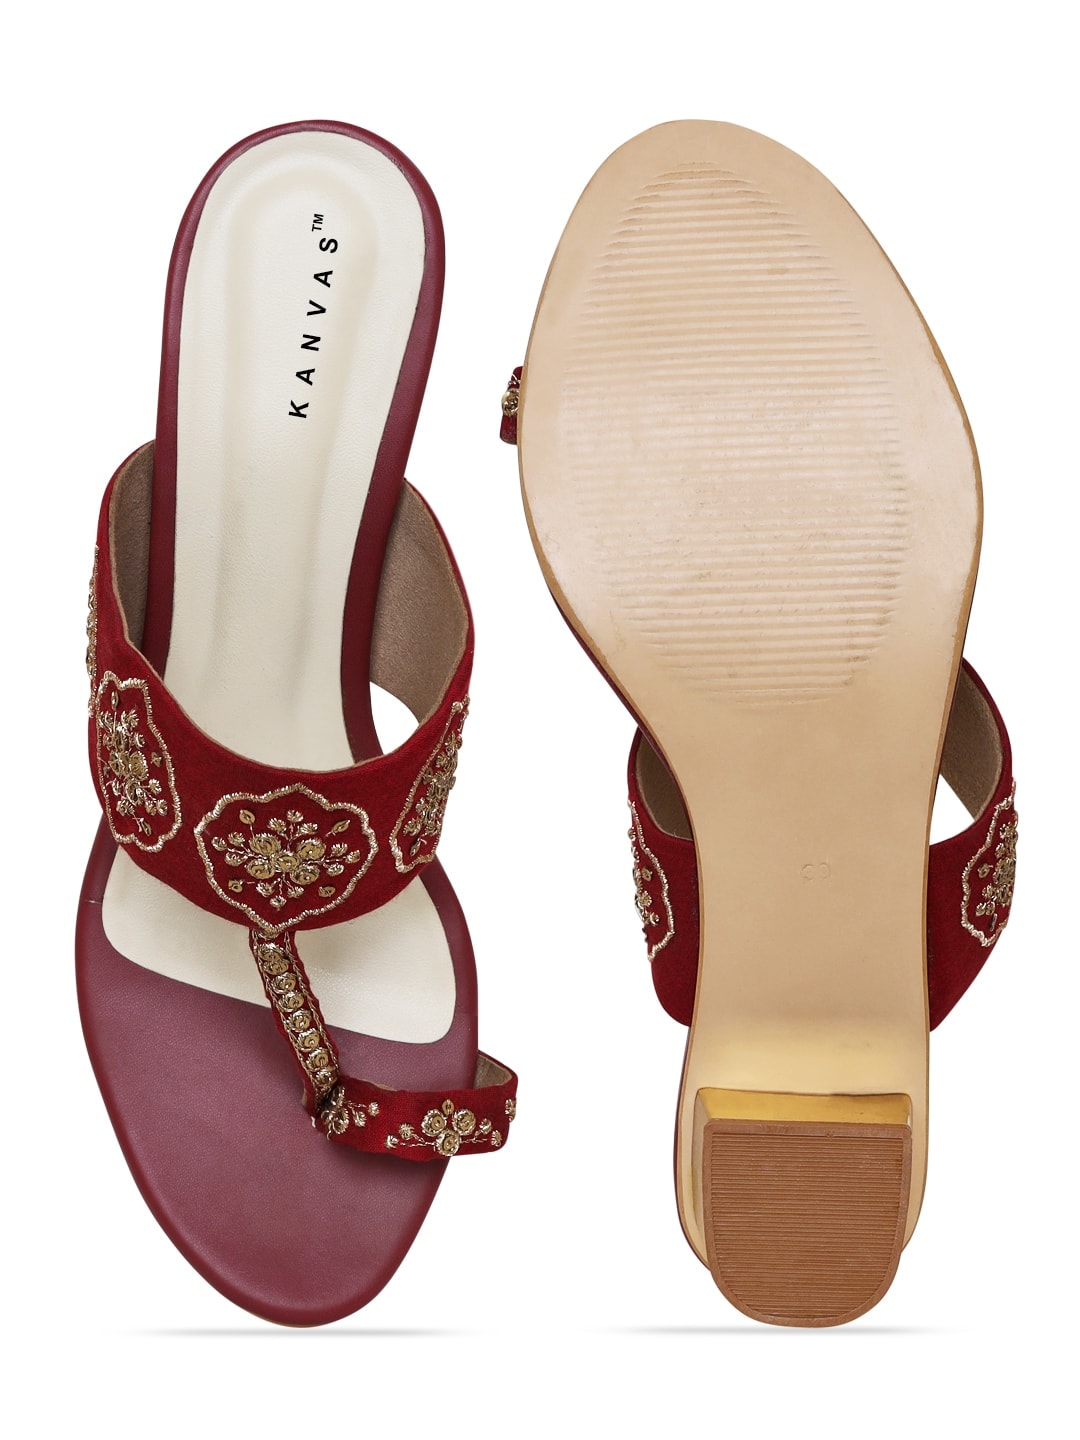 Buy Women Maroon Wedding Sandals Online | SKU: 54-62-44-36-Metro Shoes